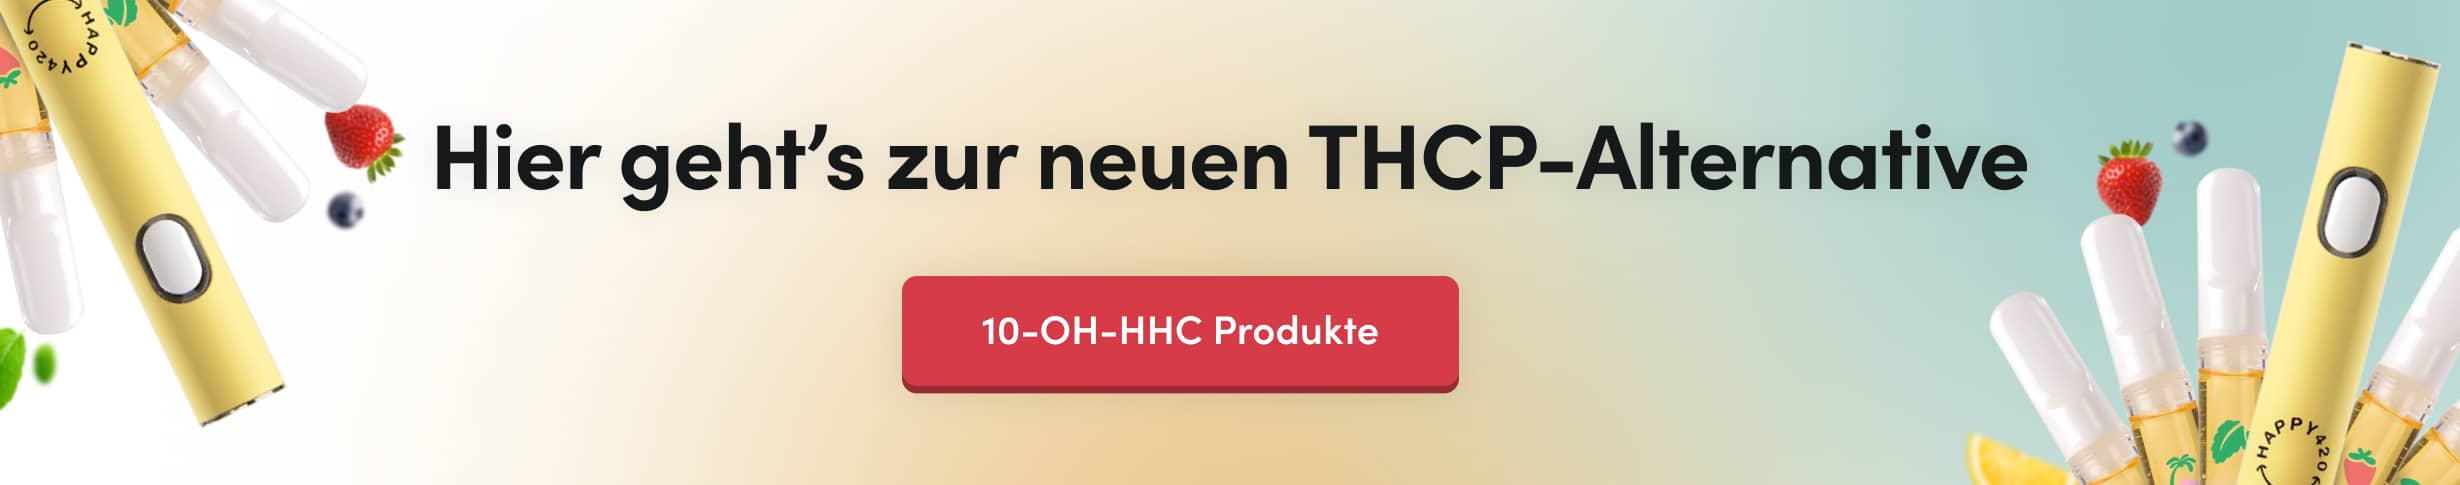 10-OH-HHC ist die neue THCP-Alternative